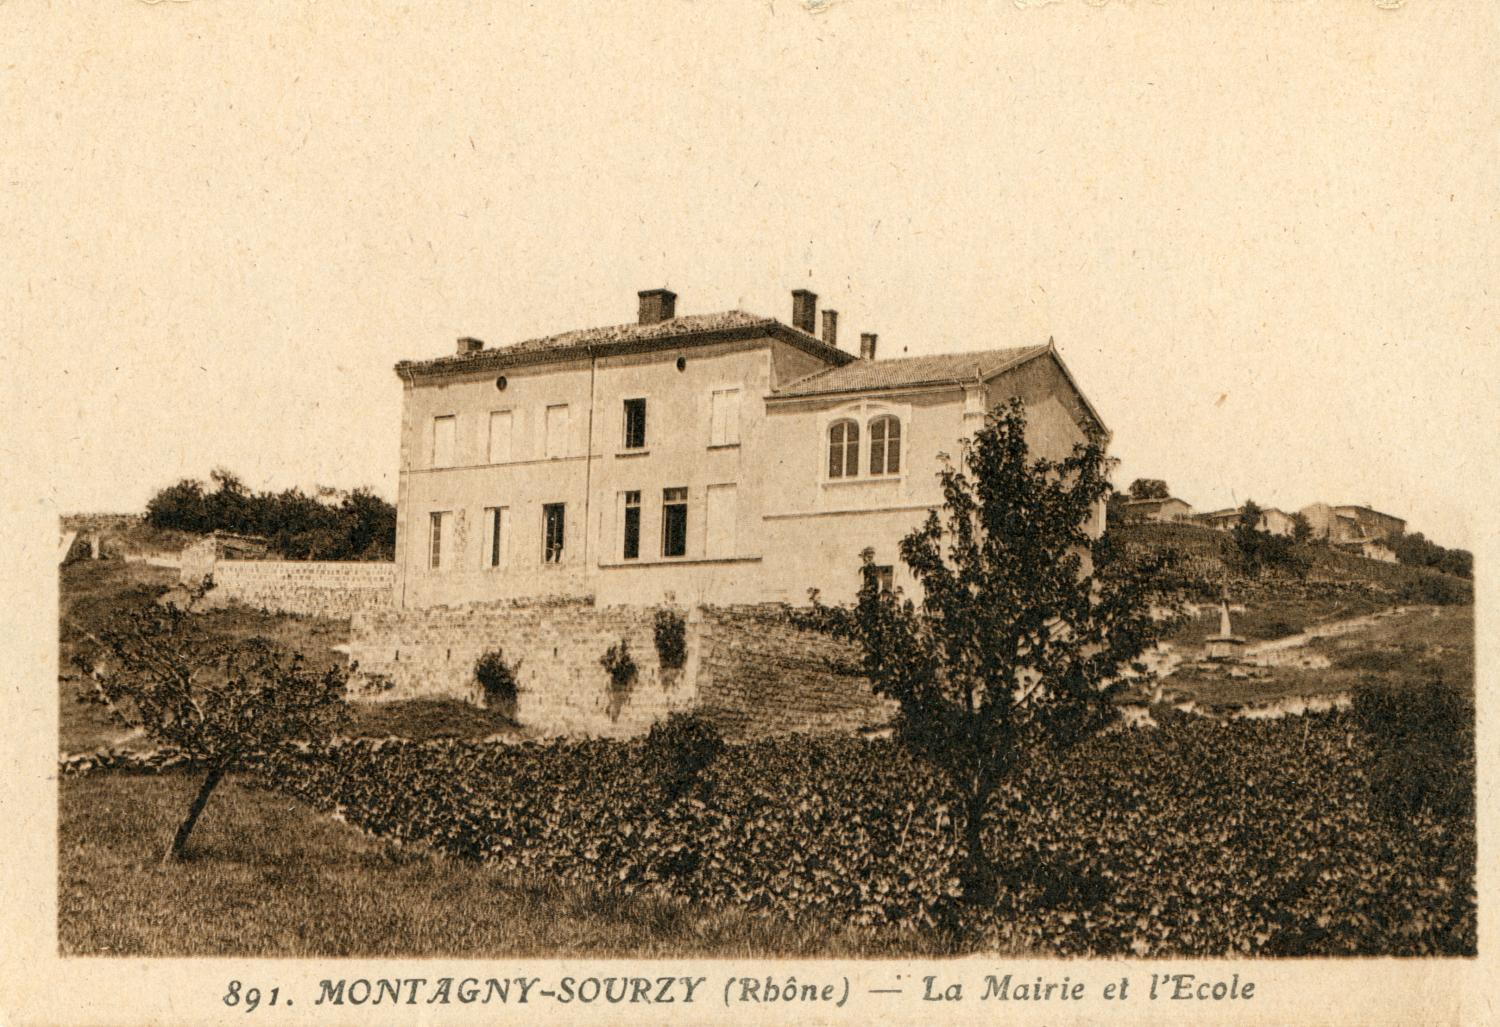 Montagny-Sourzy (Rhône). - La Mairie et l'Ecole